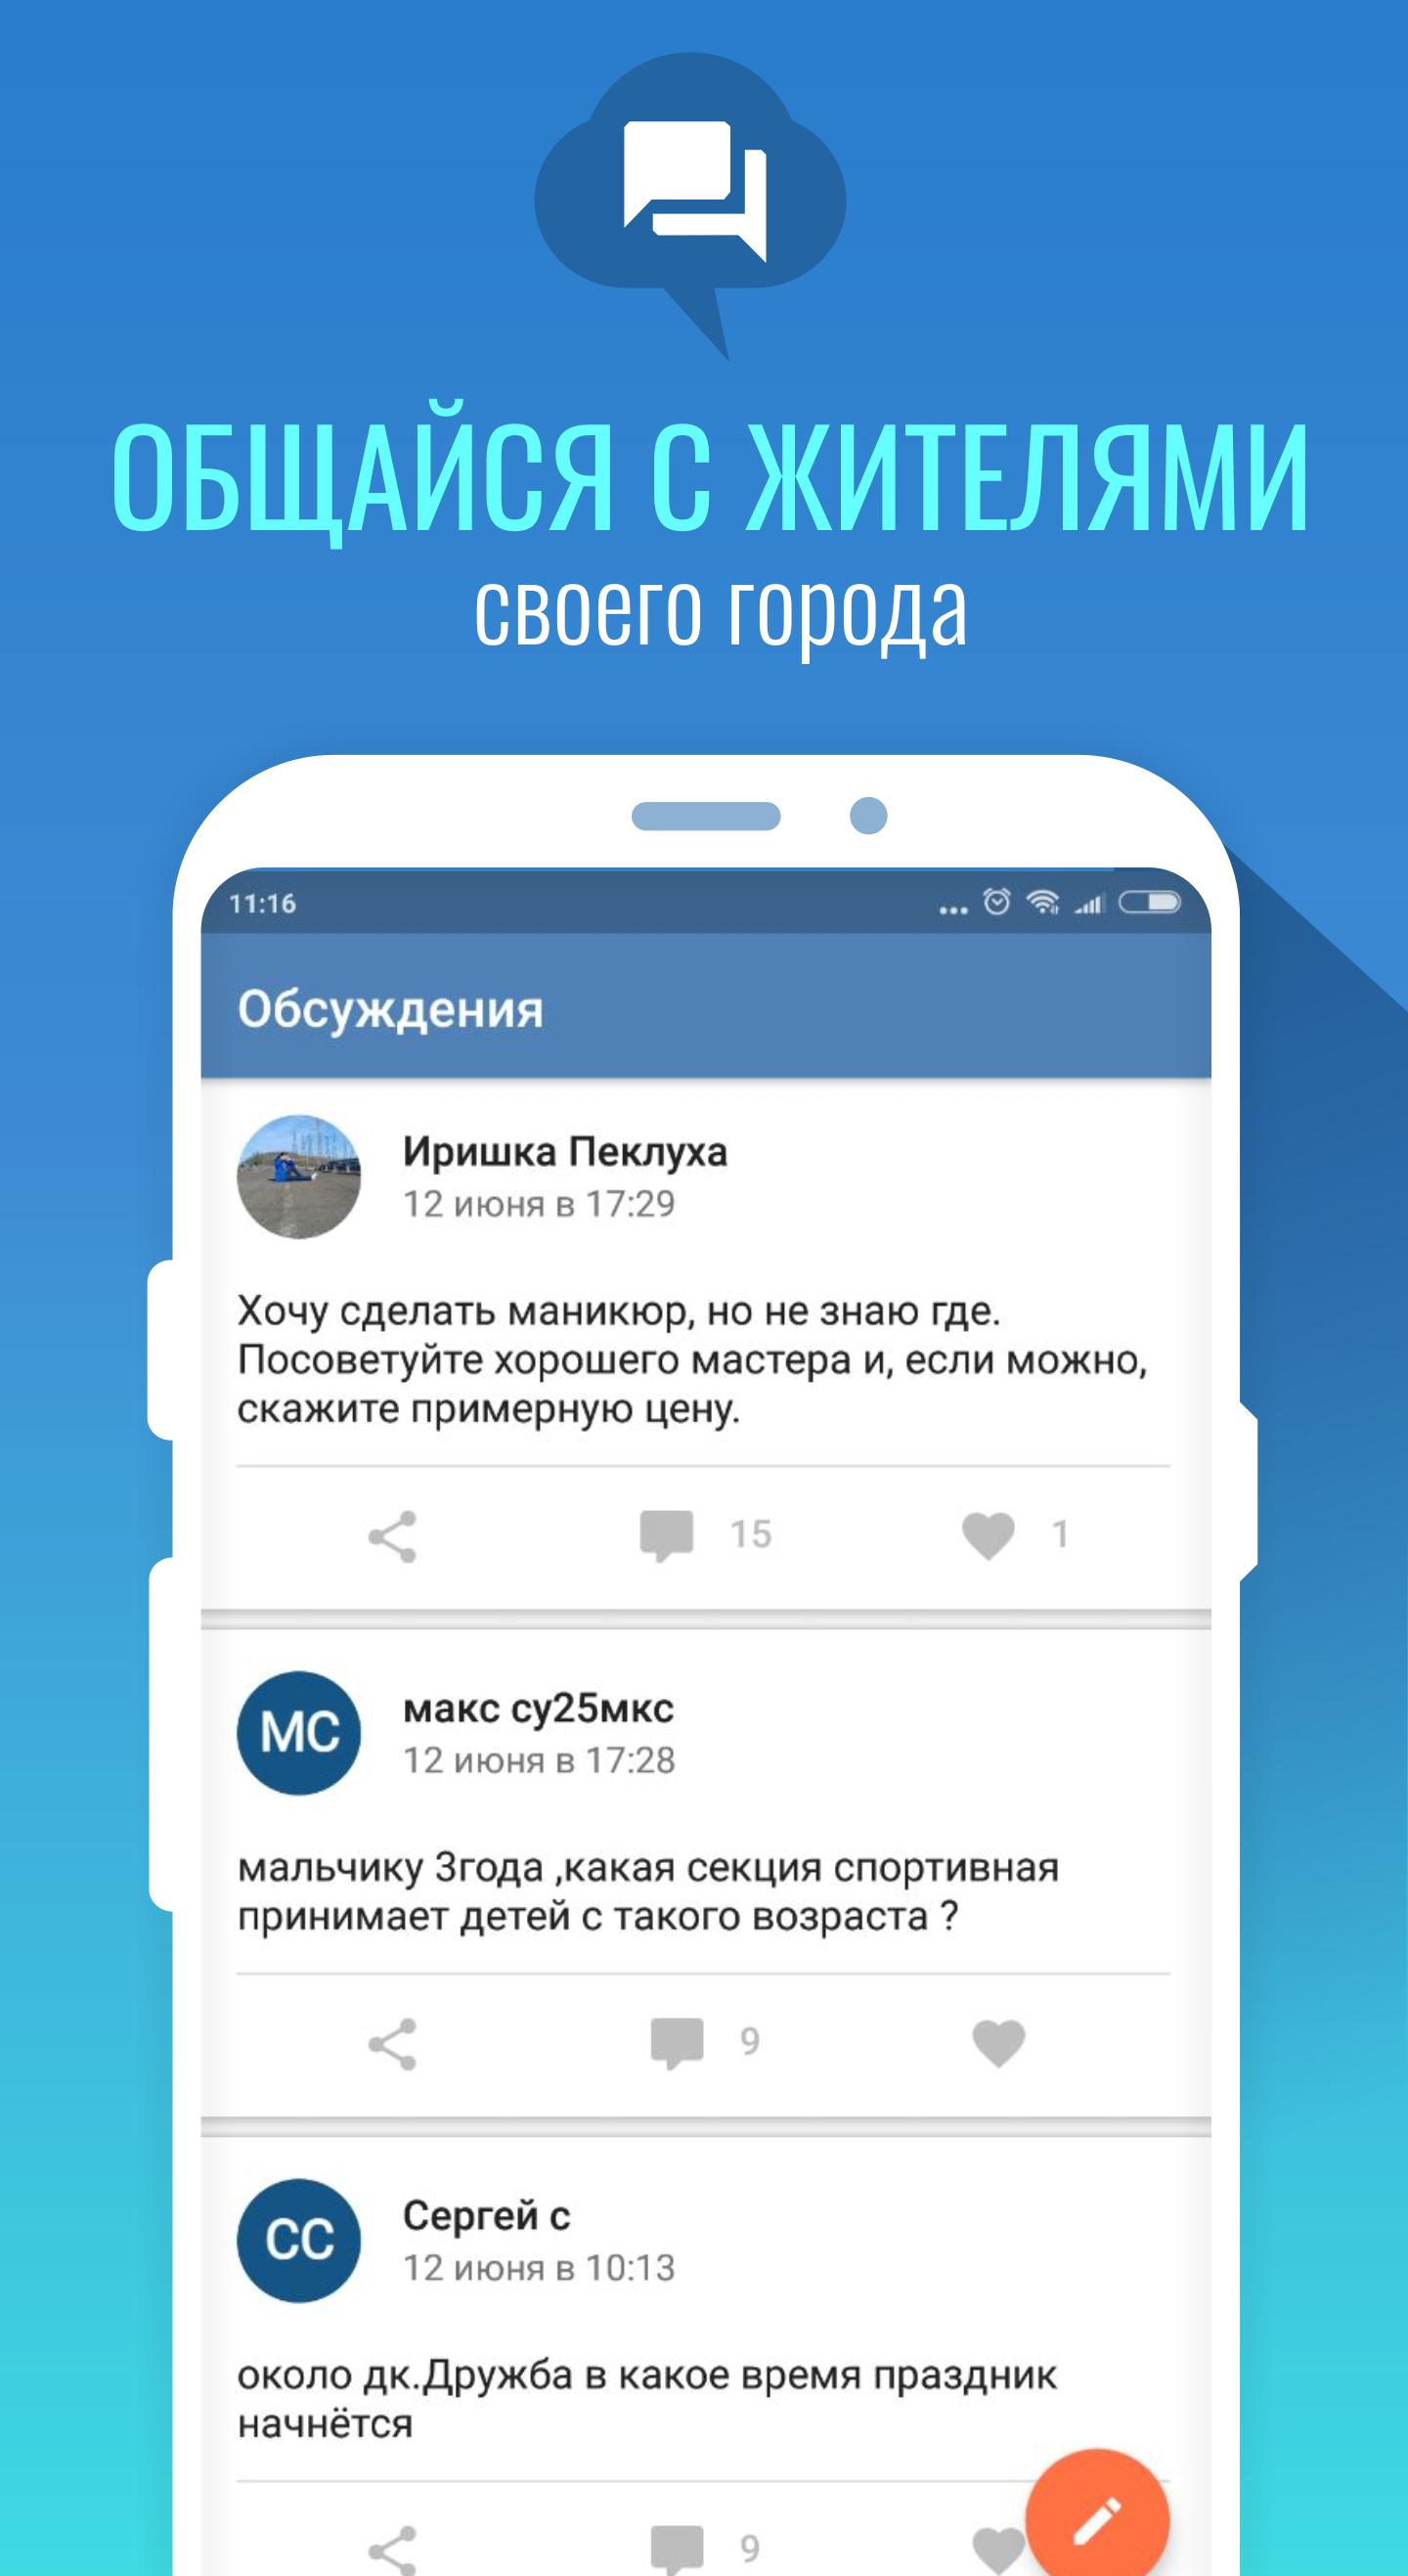 МойГород форумы, отзывы, события и новости города 2.4.13 Screenshot 3